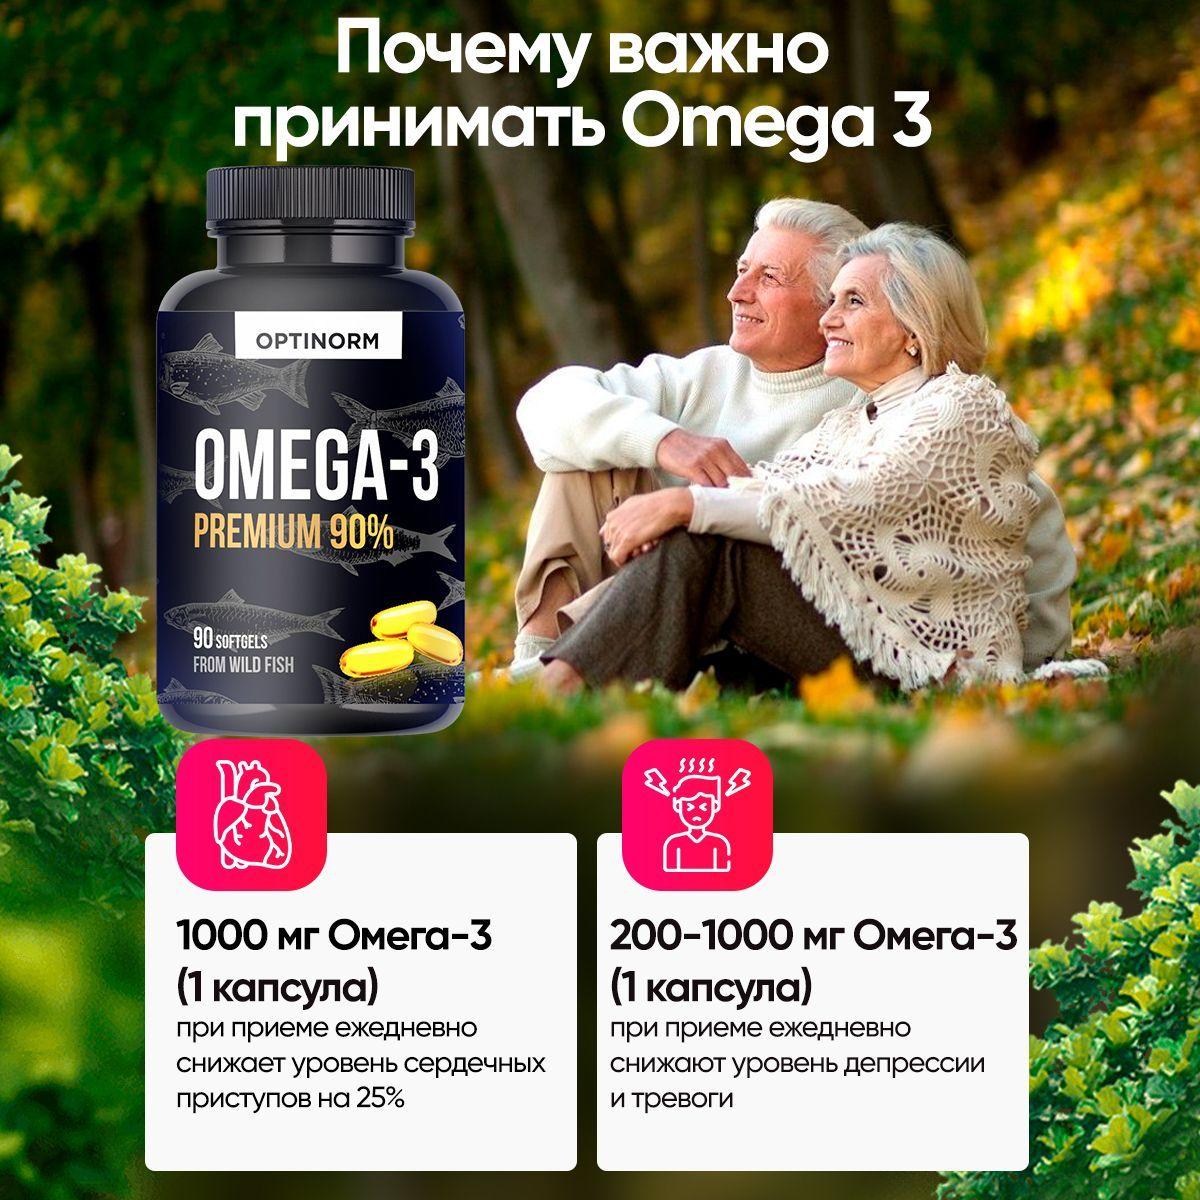 https://cdn1.ozone.ru/s3/multimedia-i/6805575234.jpg